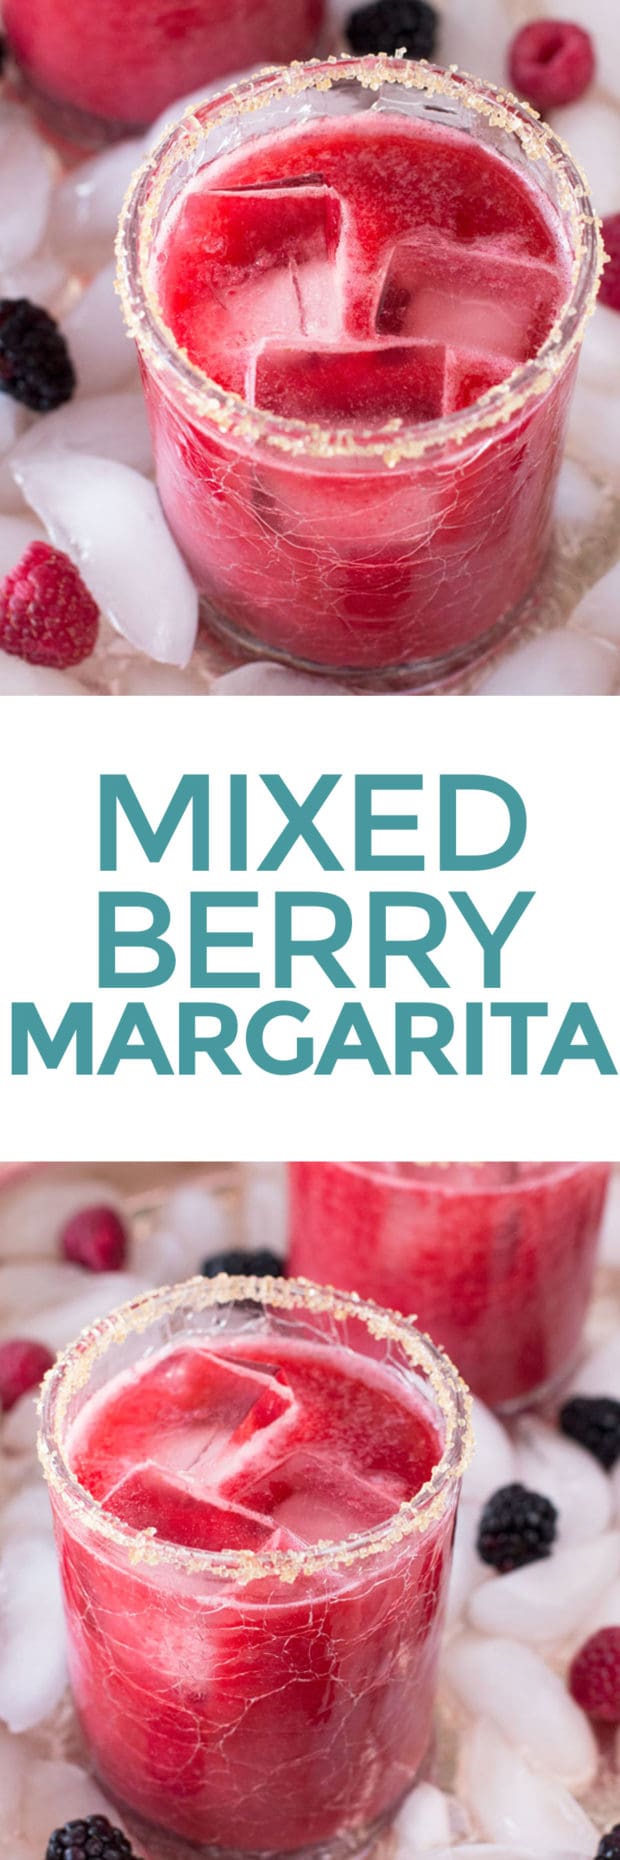 Mixed Berry Margarita | Cake 'n Knife